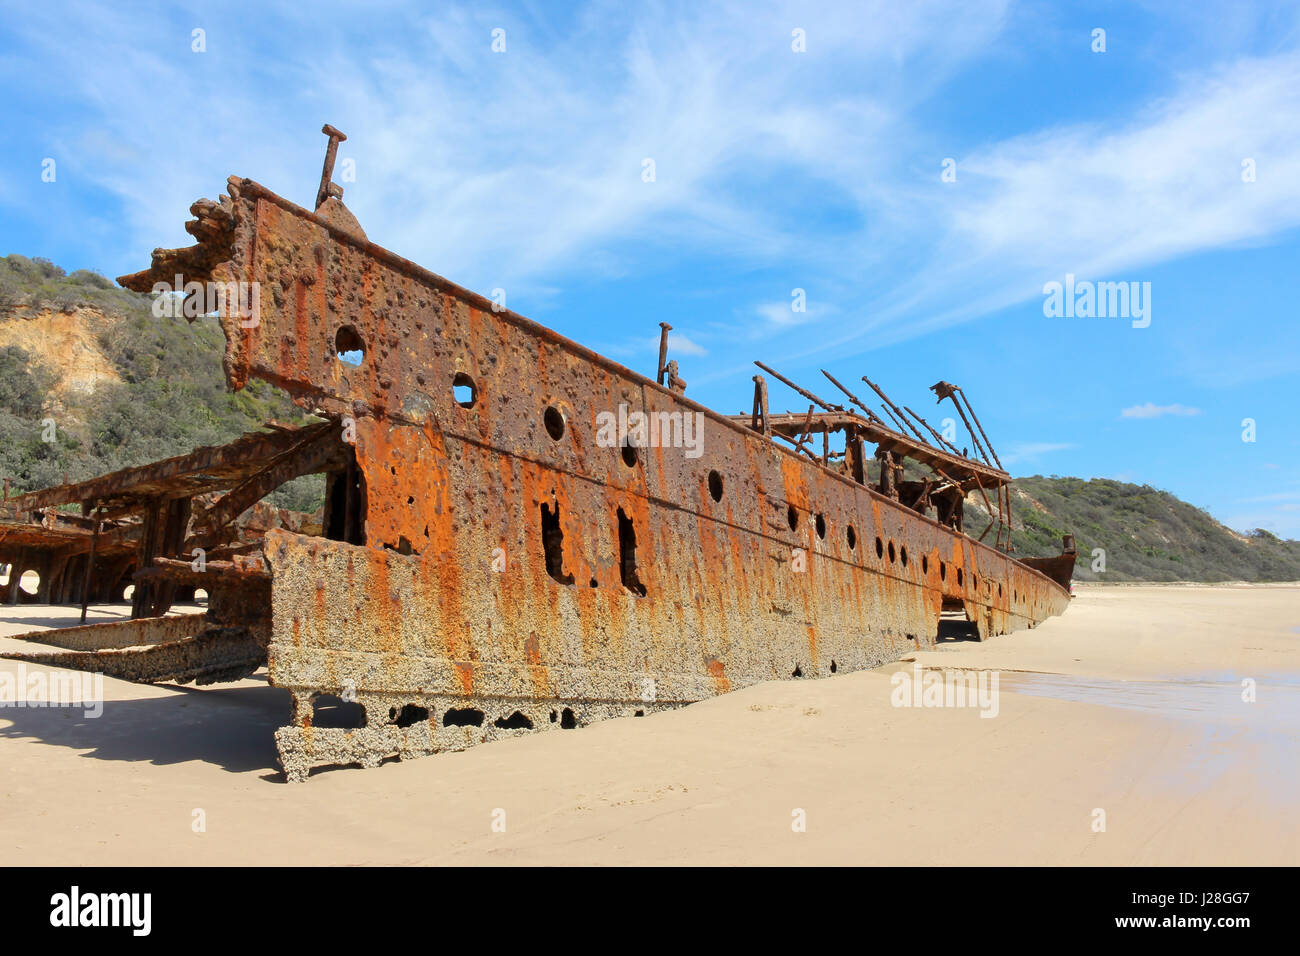 Australia, East Coast, l'Isola di Fraser, la più grande isola di sabbia del mondo, 75 miglia di spiaggia, il relitto della nave Maheno Foto Stock